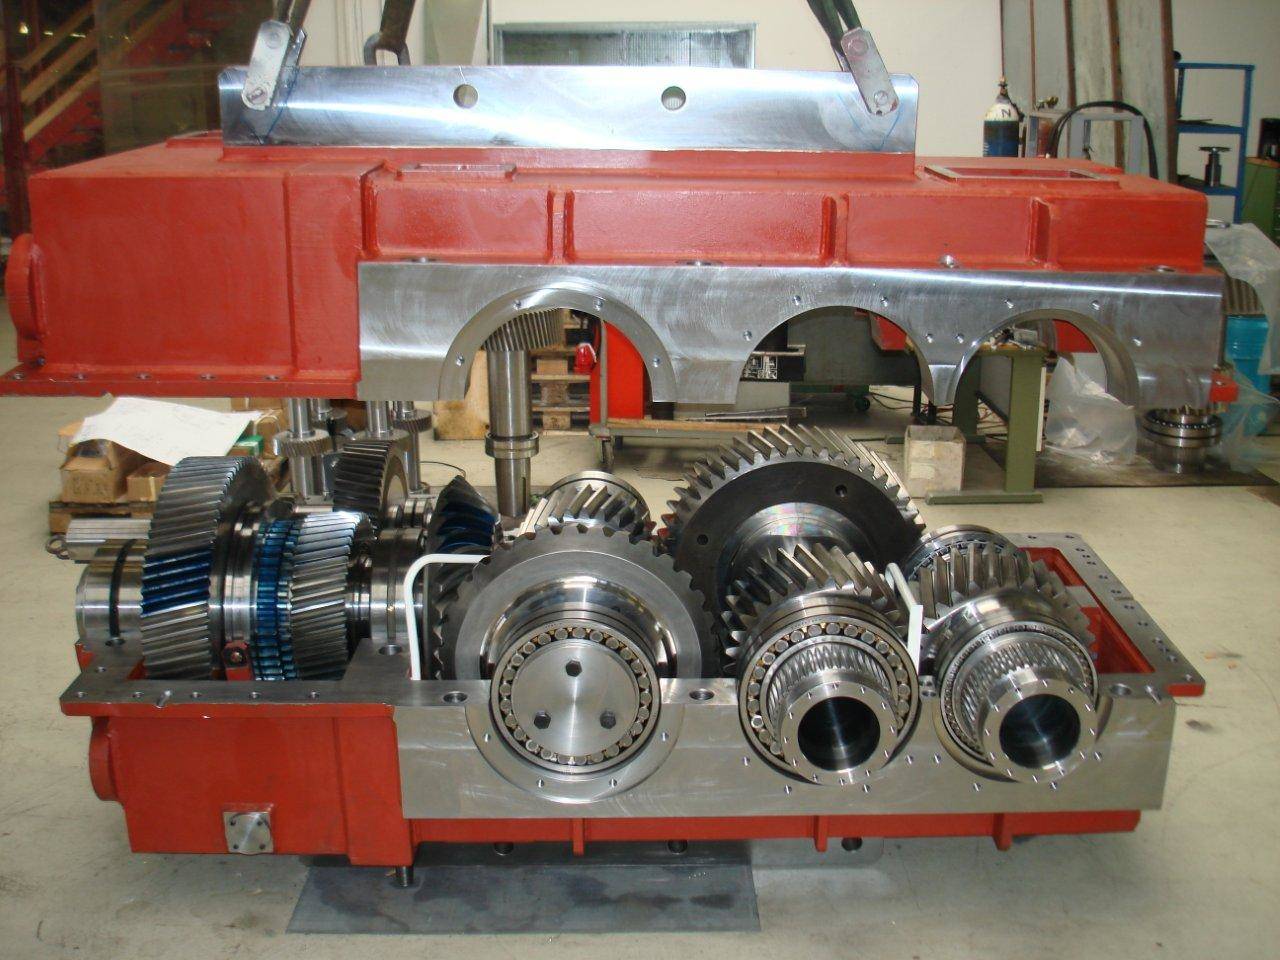 In der Fertigungshalle der Firma KACHELMANN GETRIEBE GmbH wird das acht Tonnen Walzwerksgetriebe gefertigt. Zu sehen ist das rote Gehäuse und die Umrisse der Produktionsstätte. KACHELMANN GETRIEBE GmbH